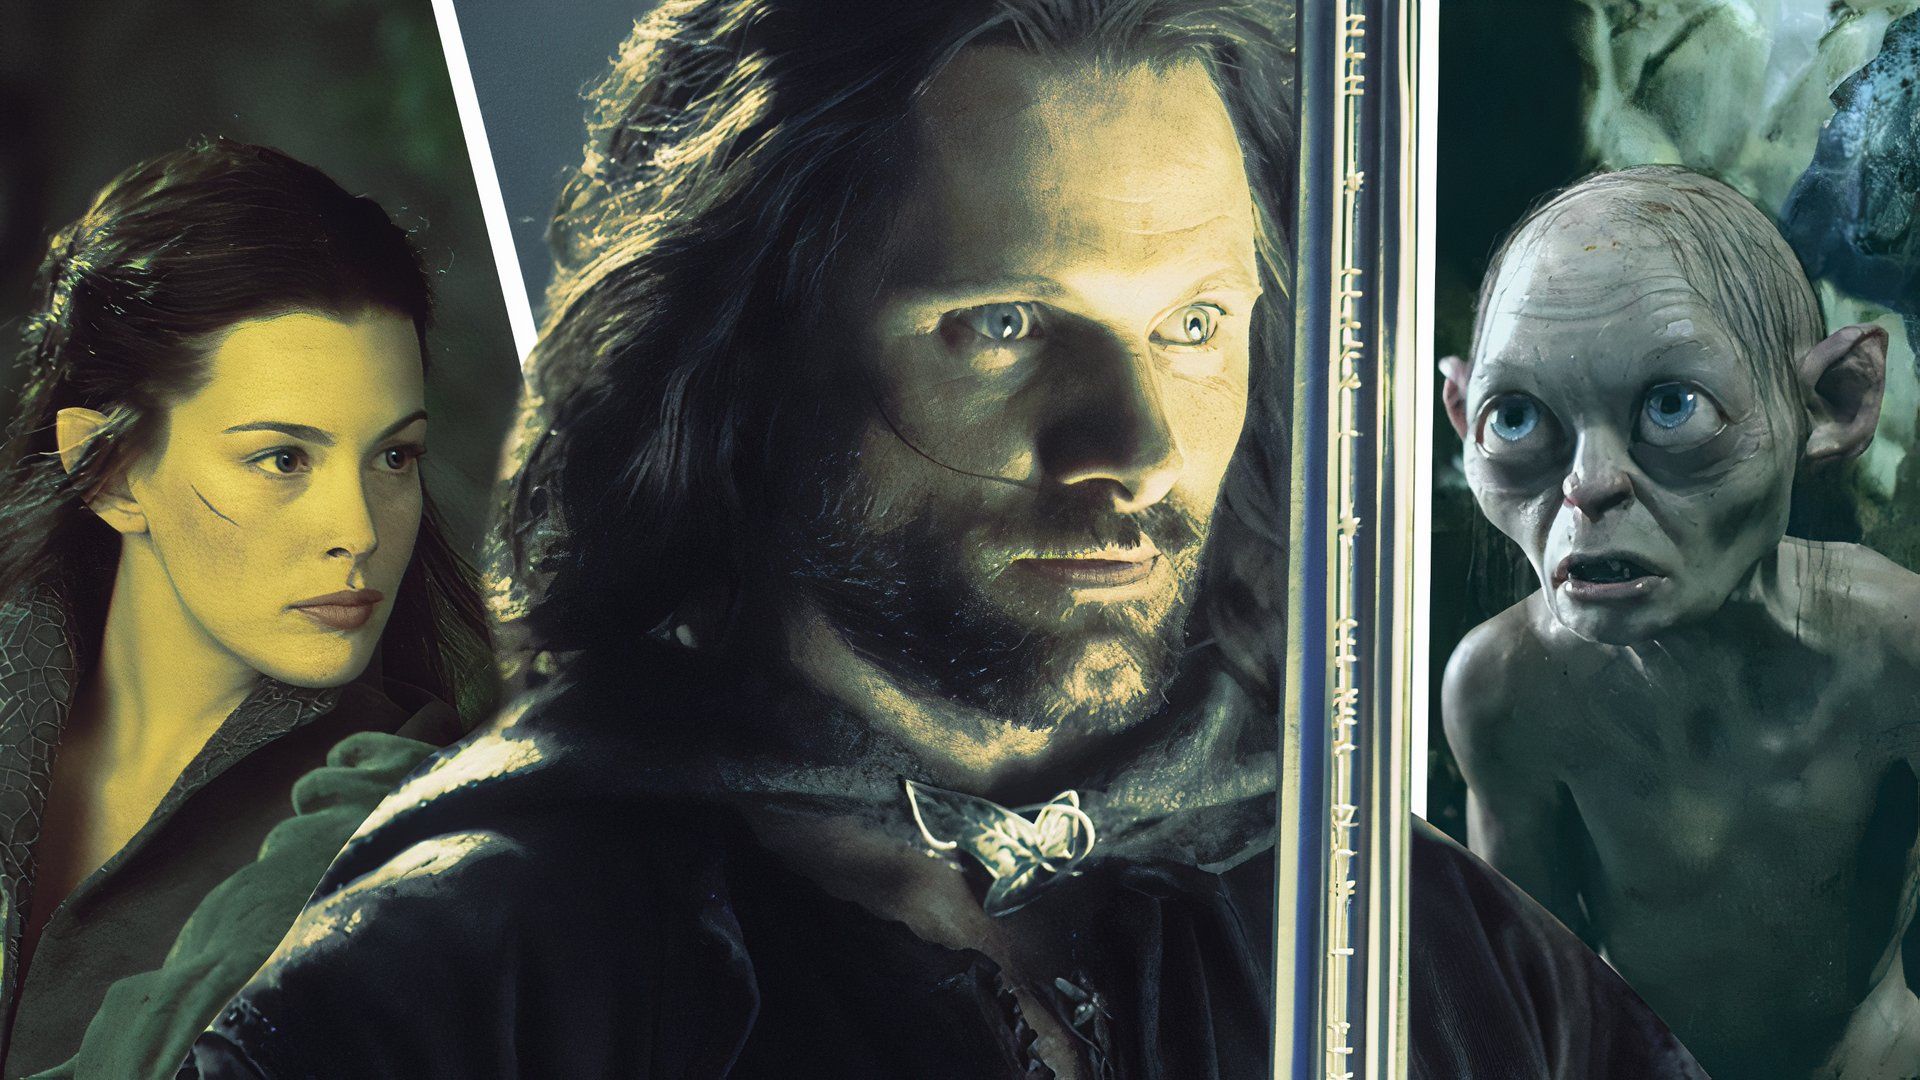 Zmieniony obraz Viggo Mortensena jako Aragorna, Liv Tyler jako Arweny i Andy'ego Serkisa jako Golluma we Władcy Pierścieni